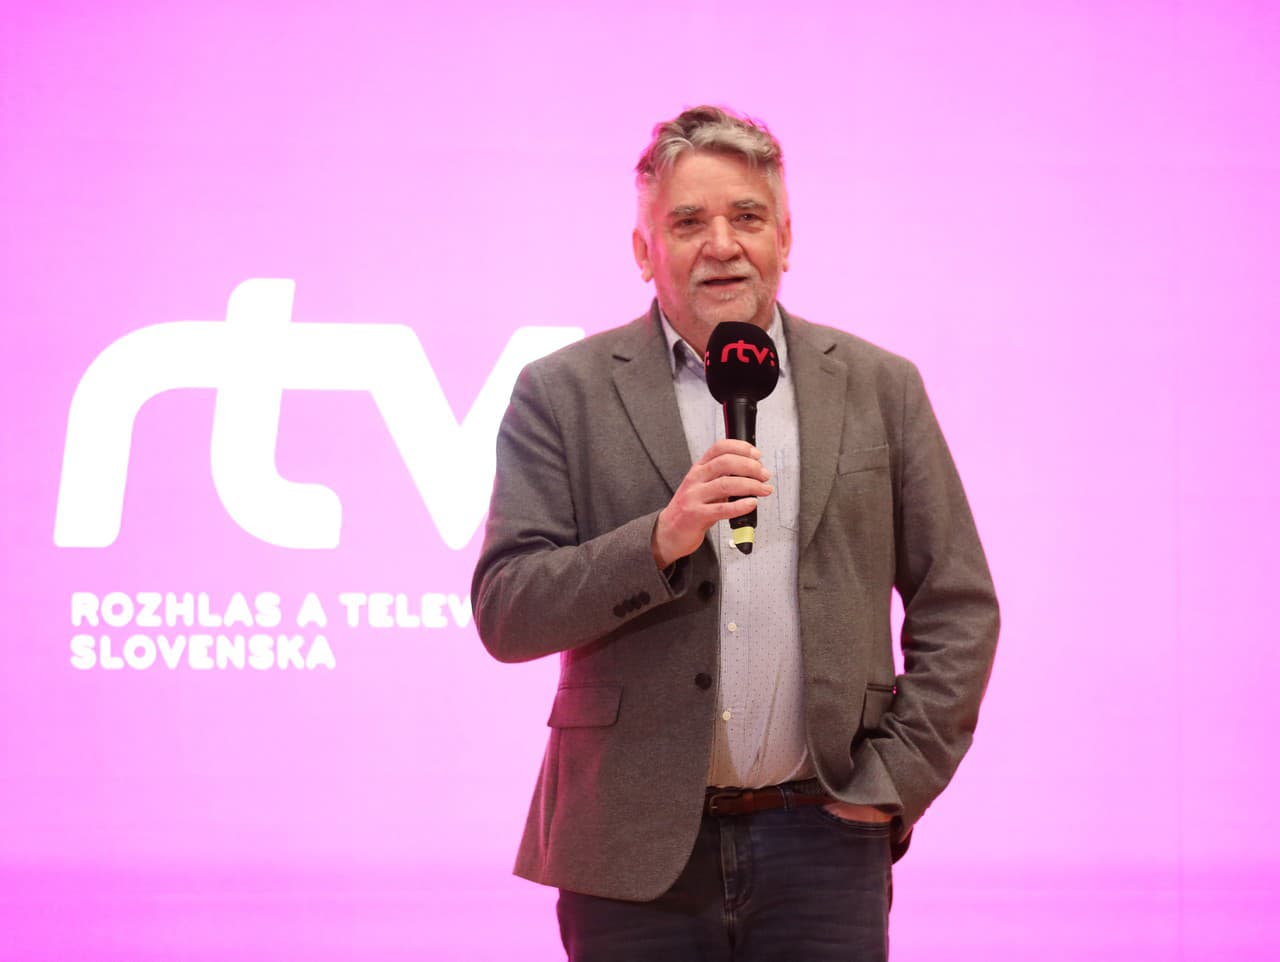 Generálny riaditeľ RTVS Ľuboš Machaj